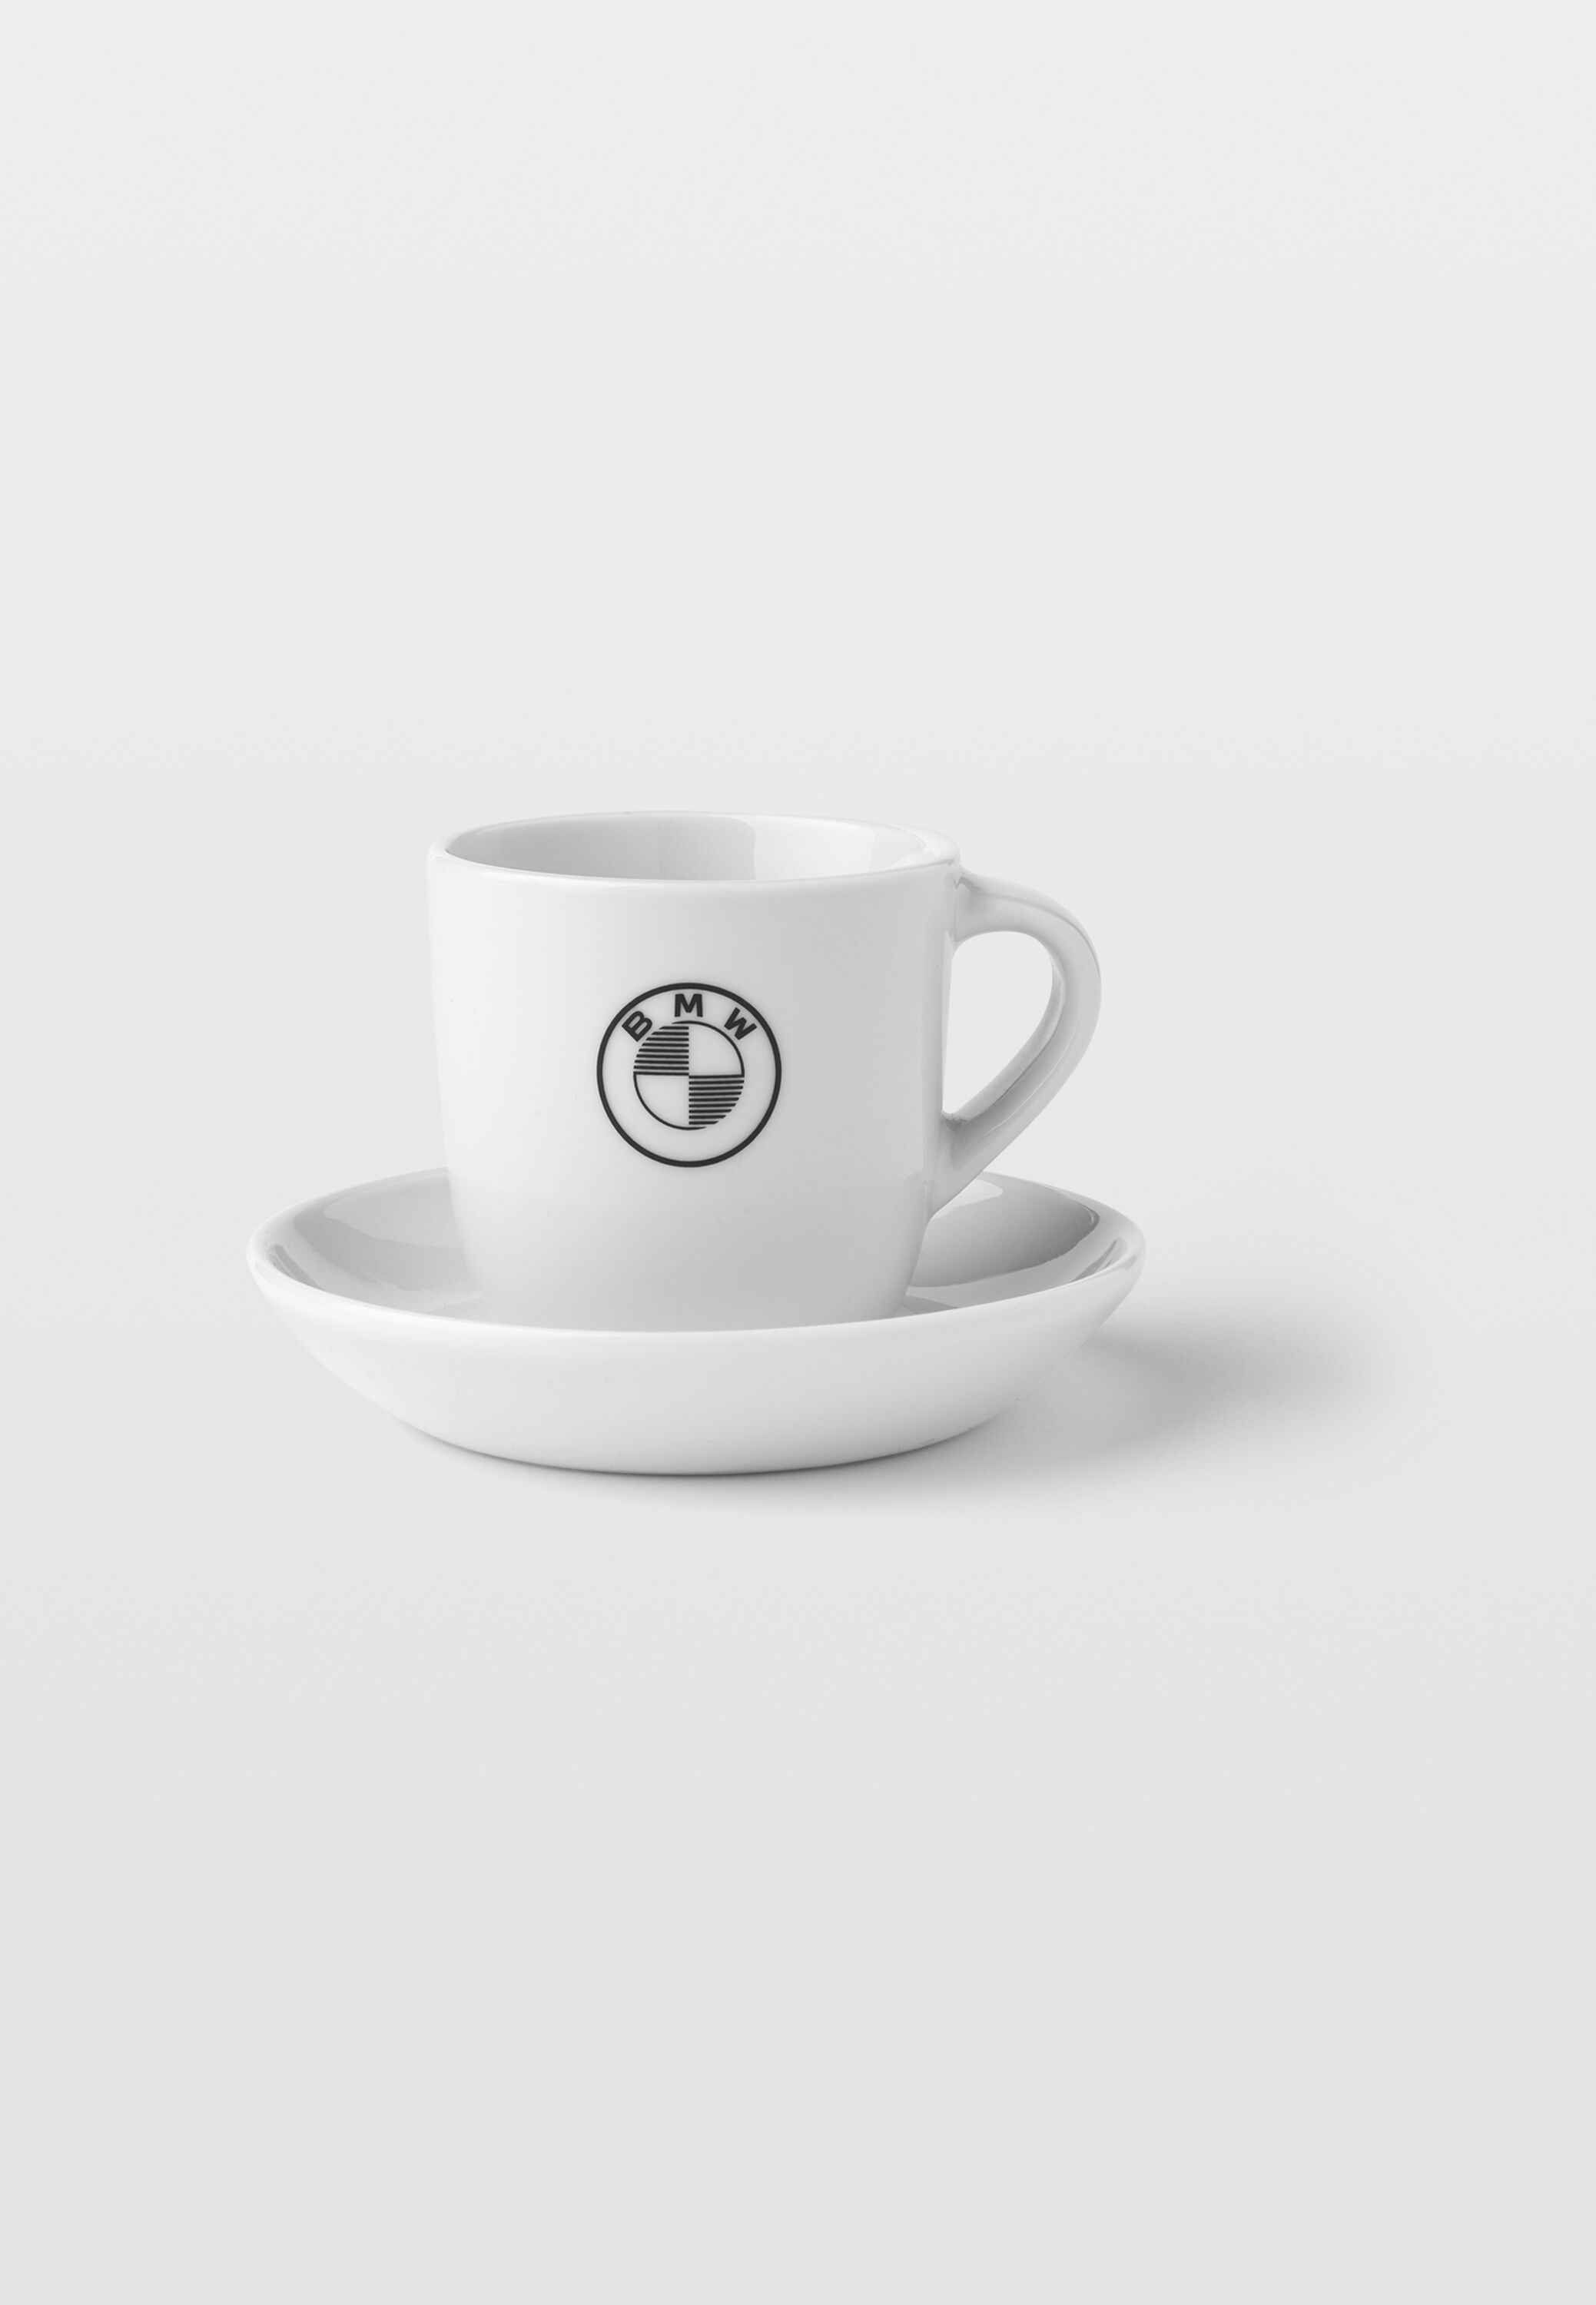 Tasse à café BMW (blanc / bleu foncé) acheter pas cher ▷ bmw-motorrad